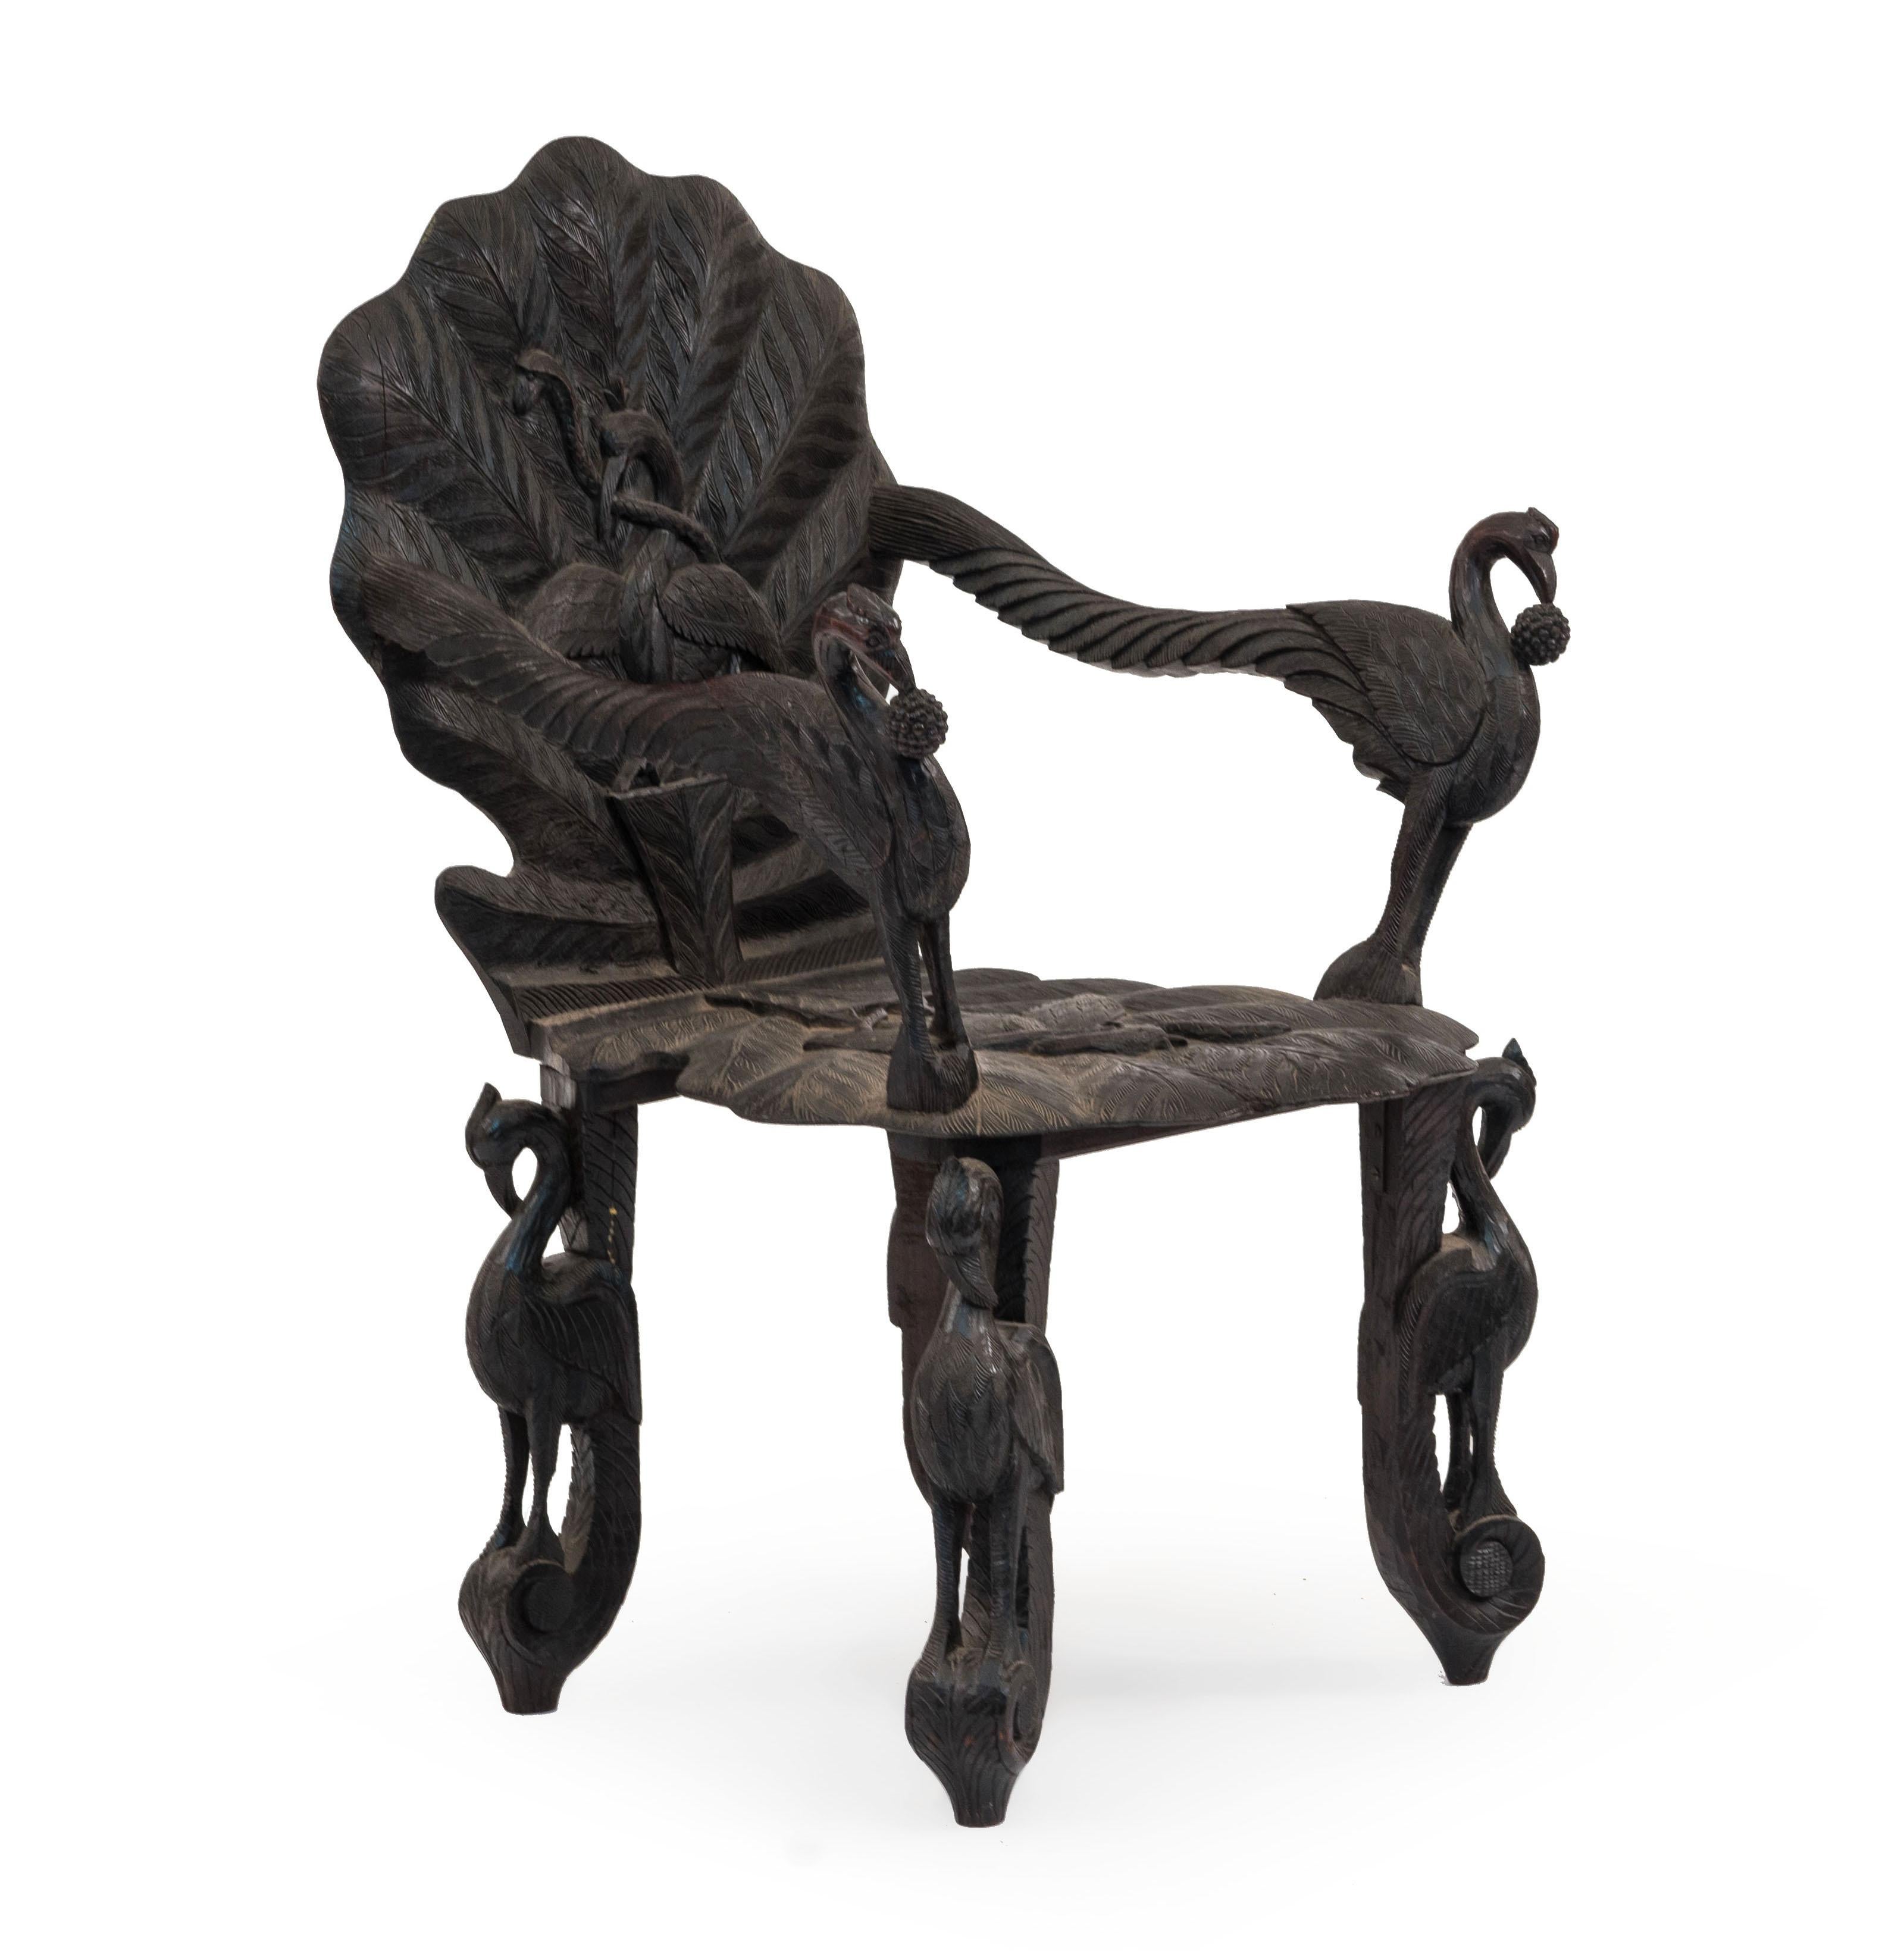 Paire de fauteuils asiatiques de style birman (19e siècle), sculptés en bois d'ébène, avec sièges et dossiers à motifs de feuilles, et accoudoirs sculptés d'oiseaux. (prix par paire).